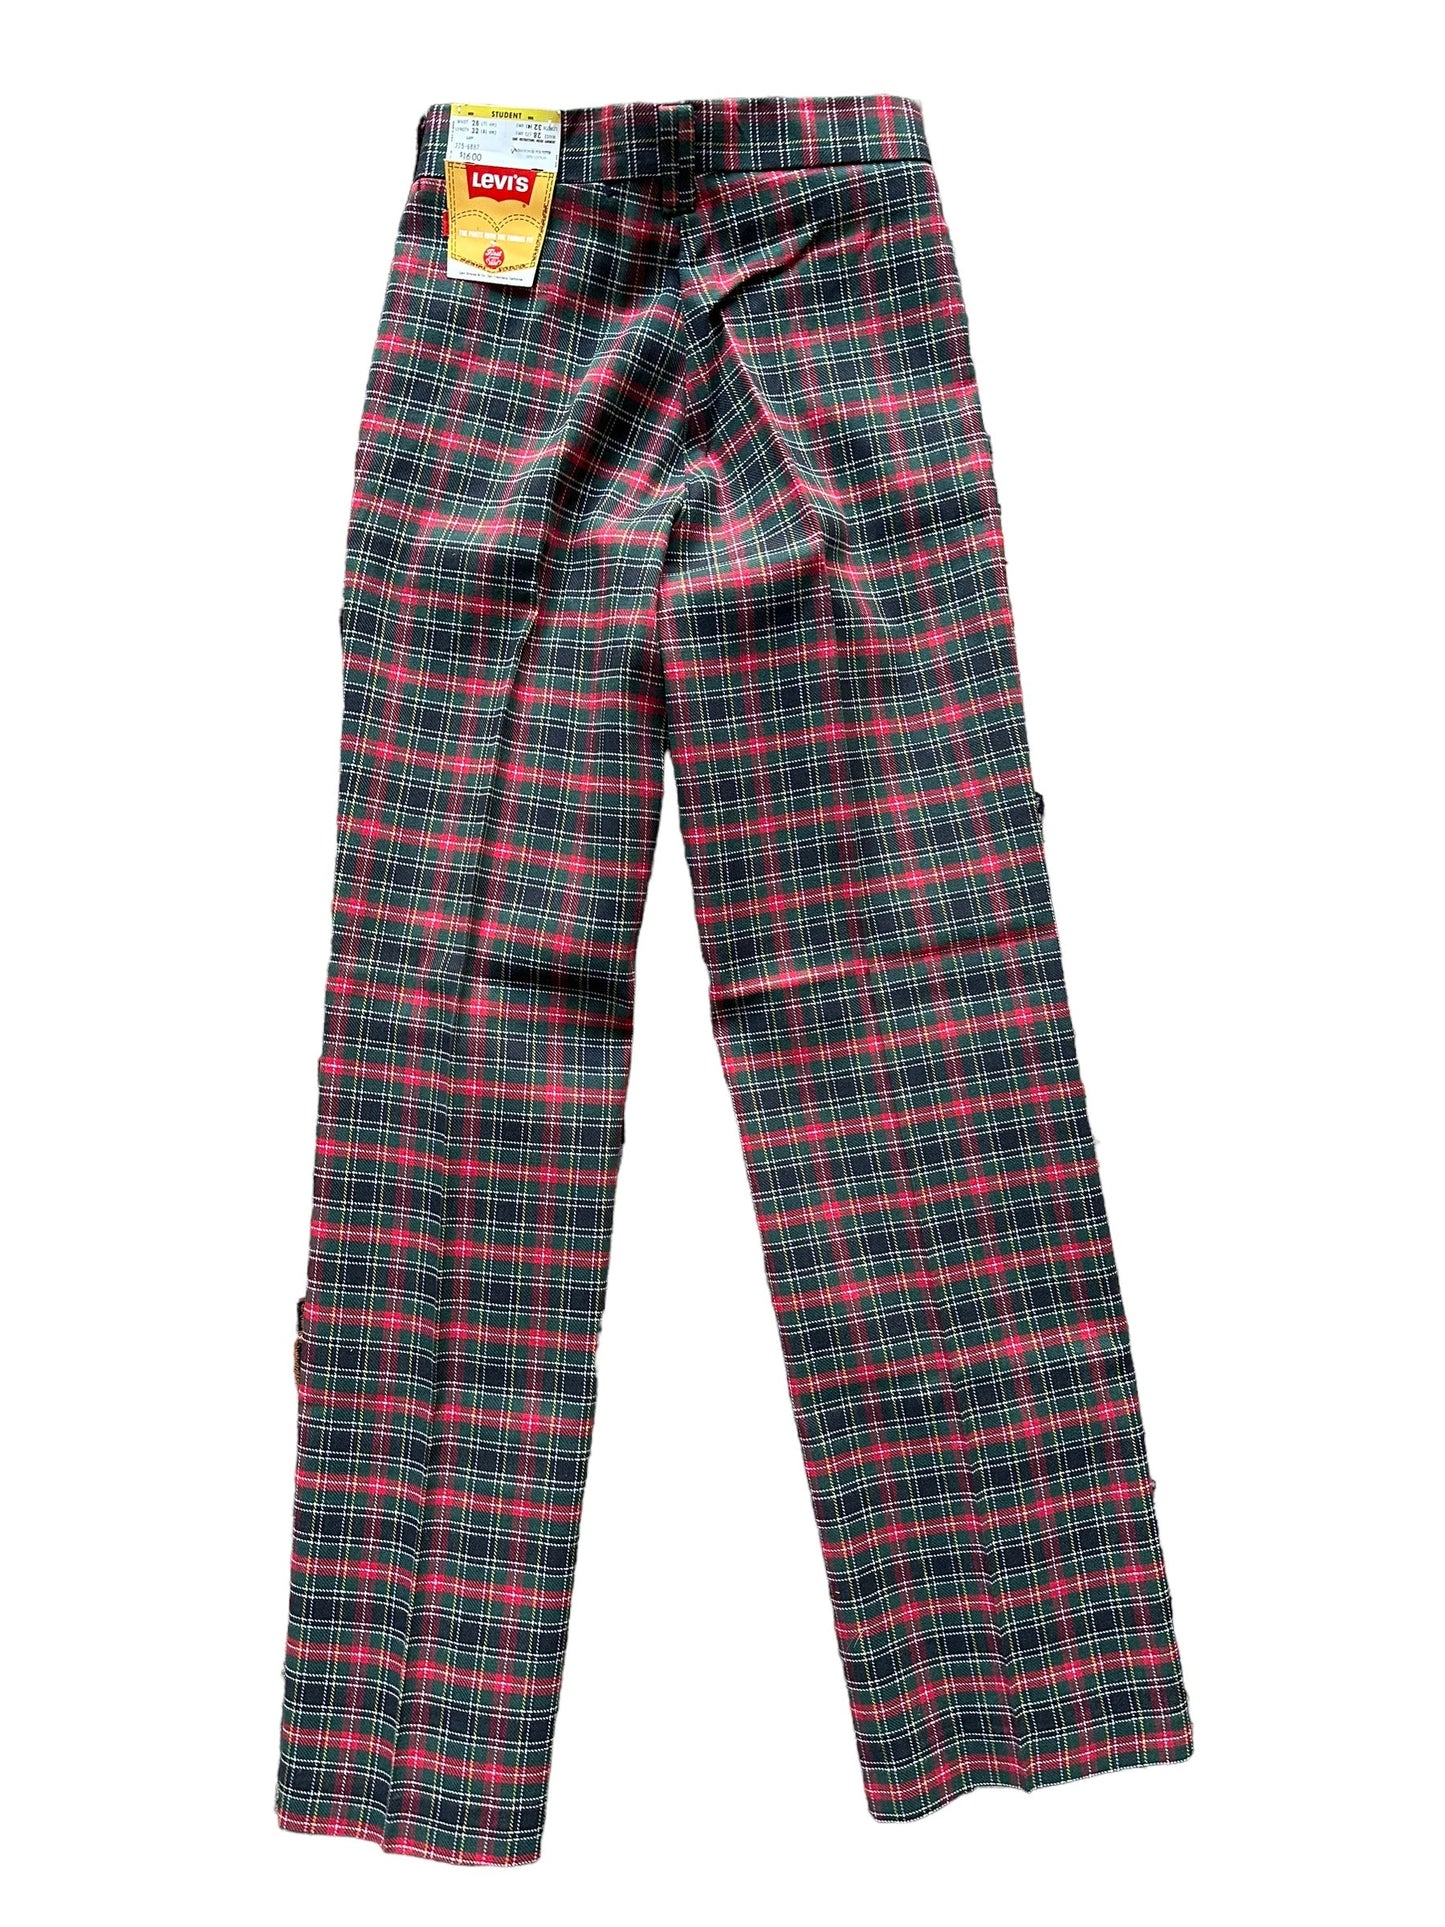 Full back view of Vintage 1970s Deadstock Plaid Levi's Boyswear Trousers 27x33 | Vintage Deadstock Pants | Seattle True Vintage